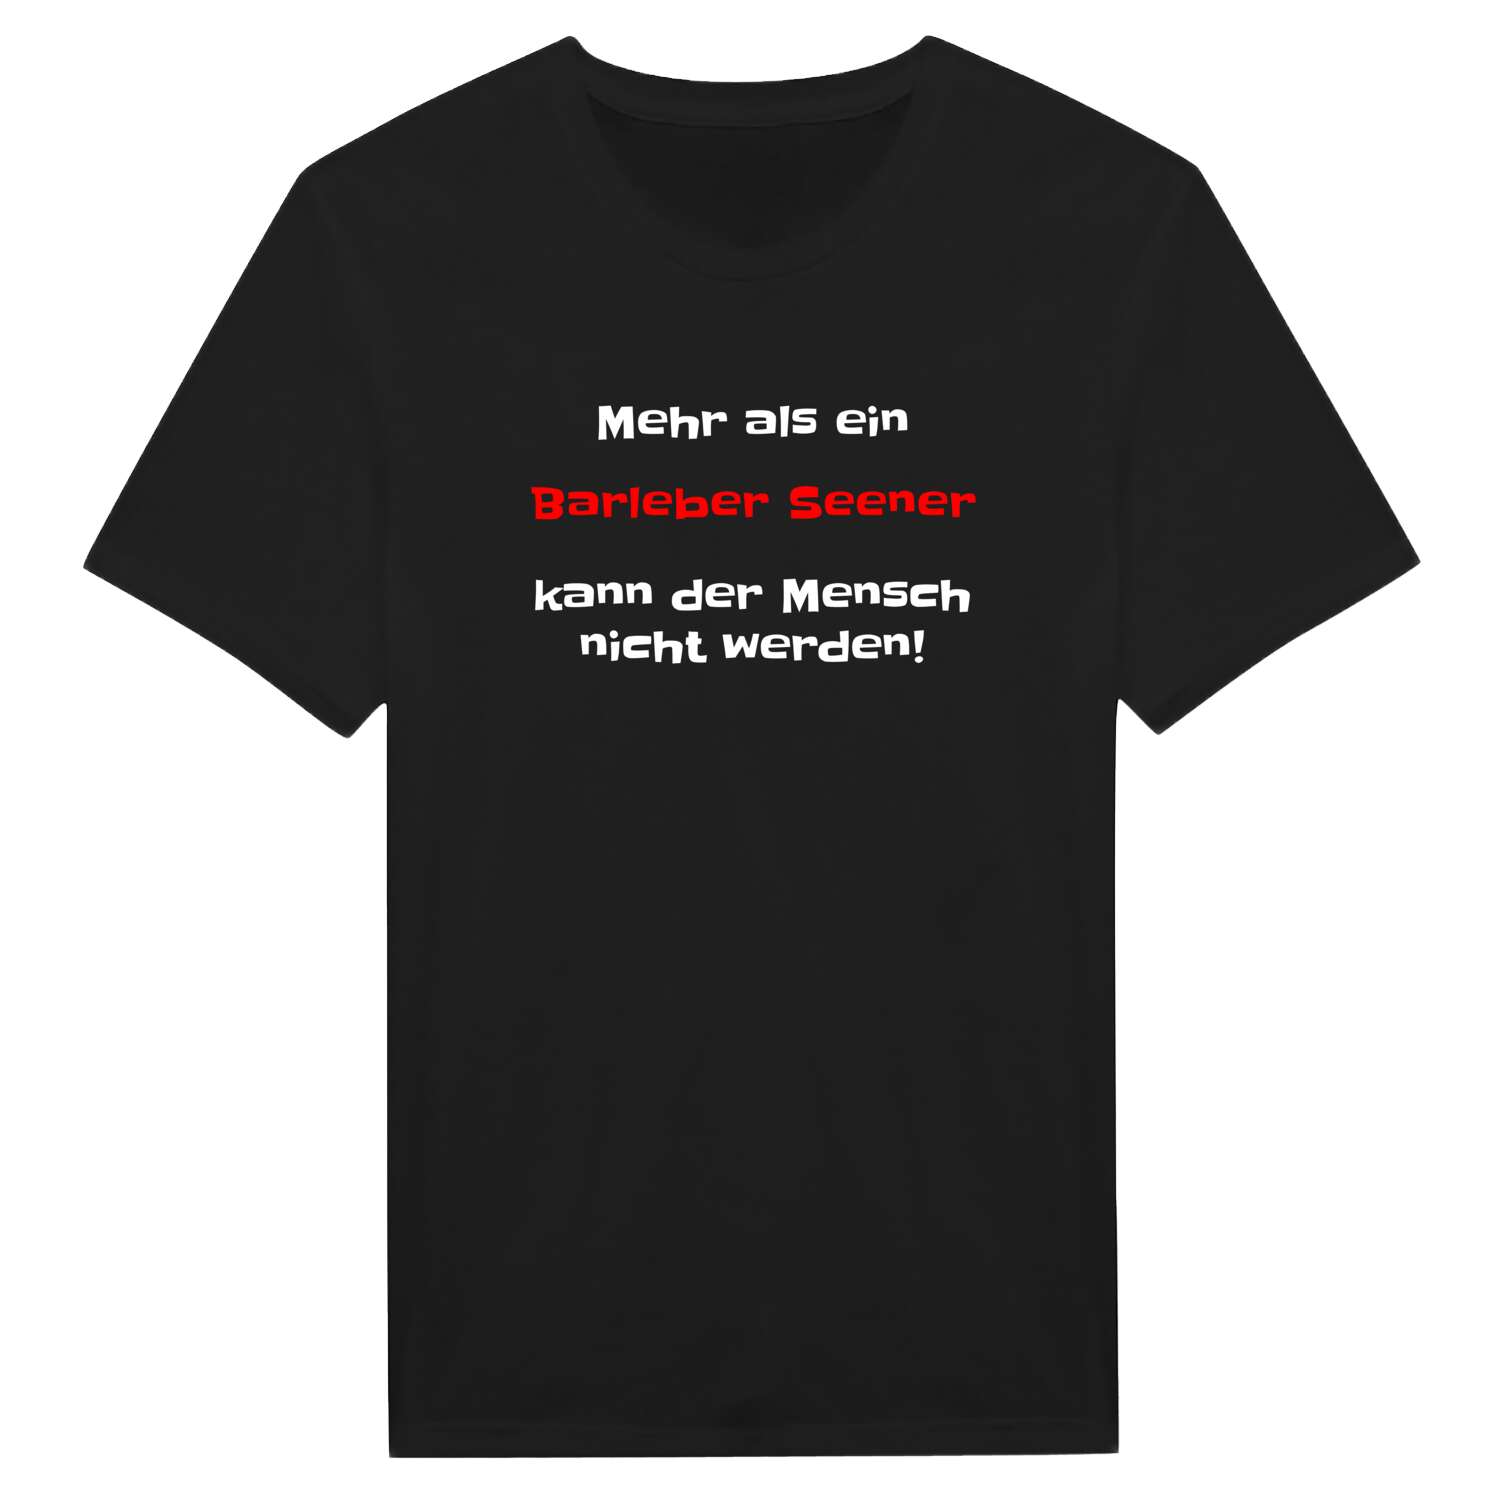 Barleber See T-Shirt »Mehr als ein«